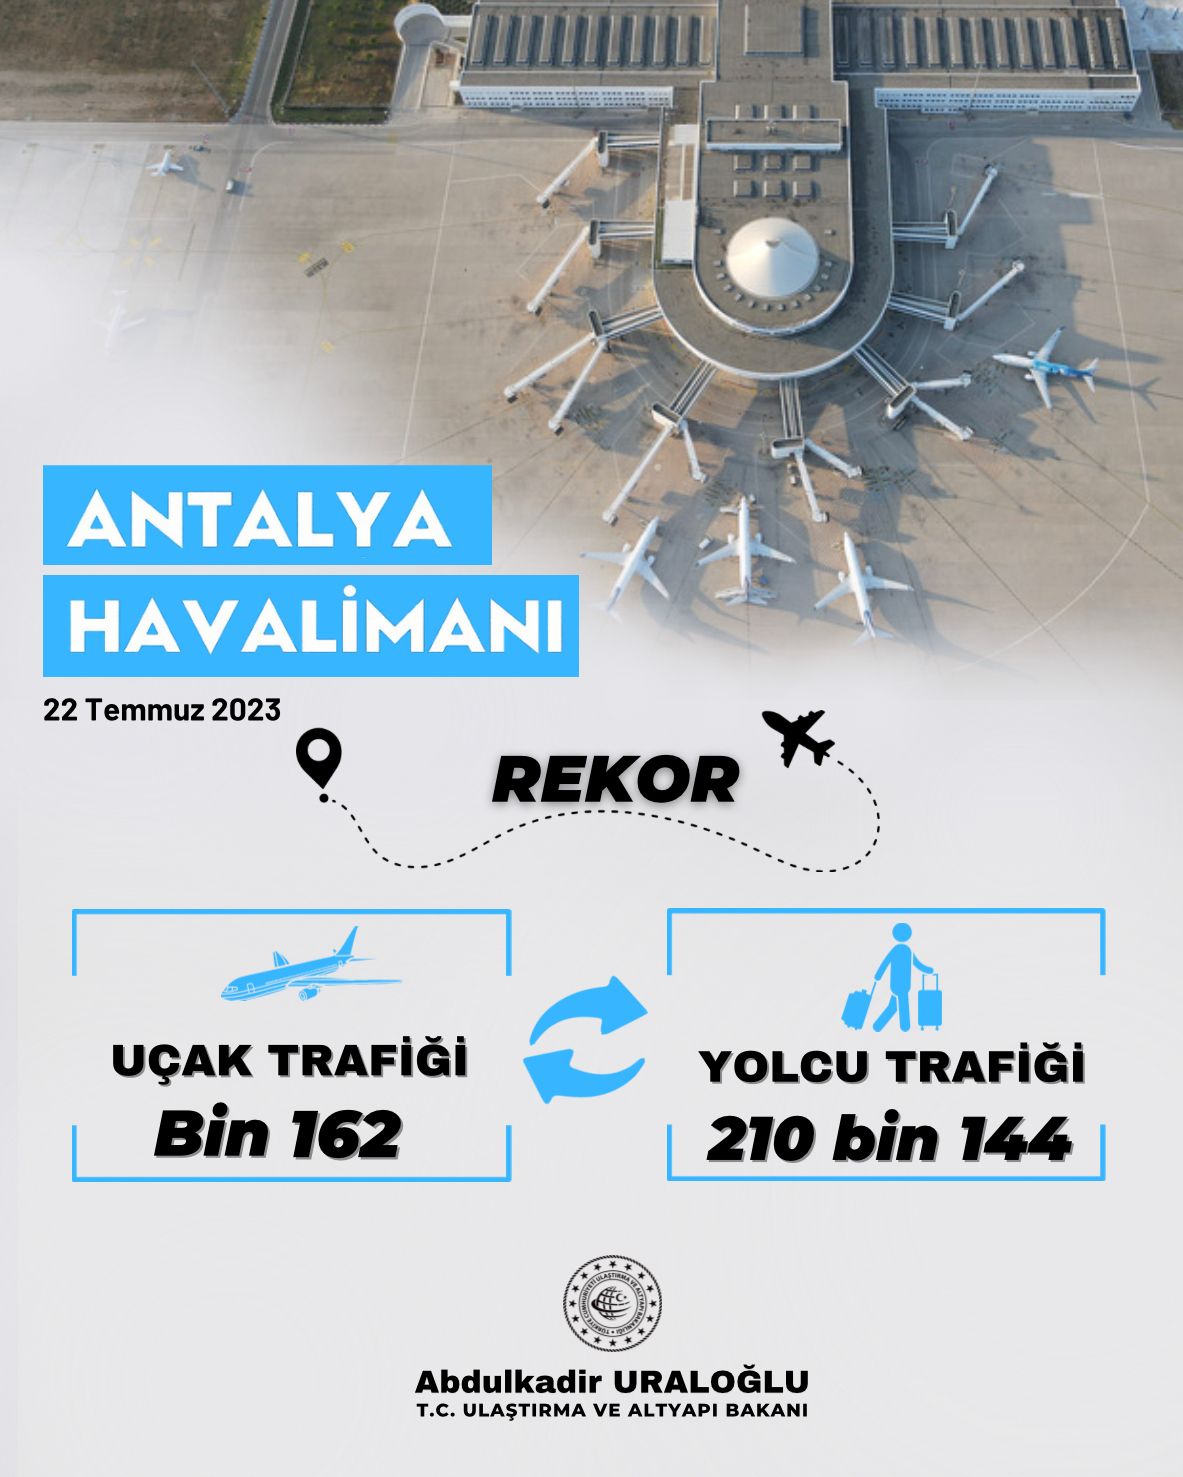 Antalya Havalimanı, tüm zamanların rekoruna imza attı 27 Nisan 2024